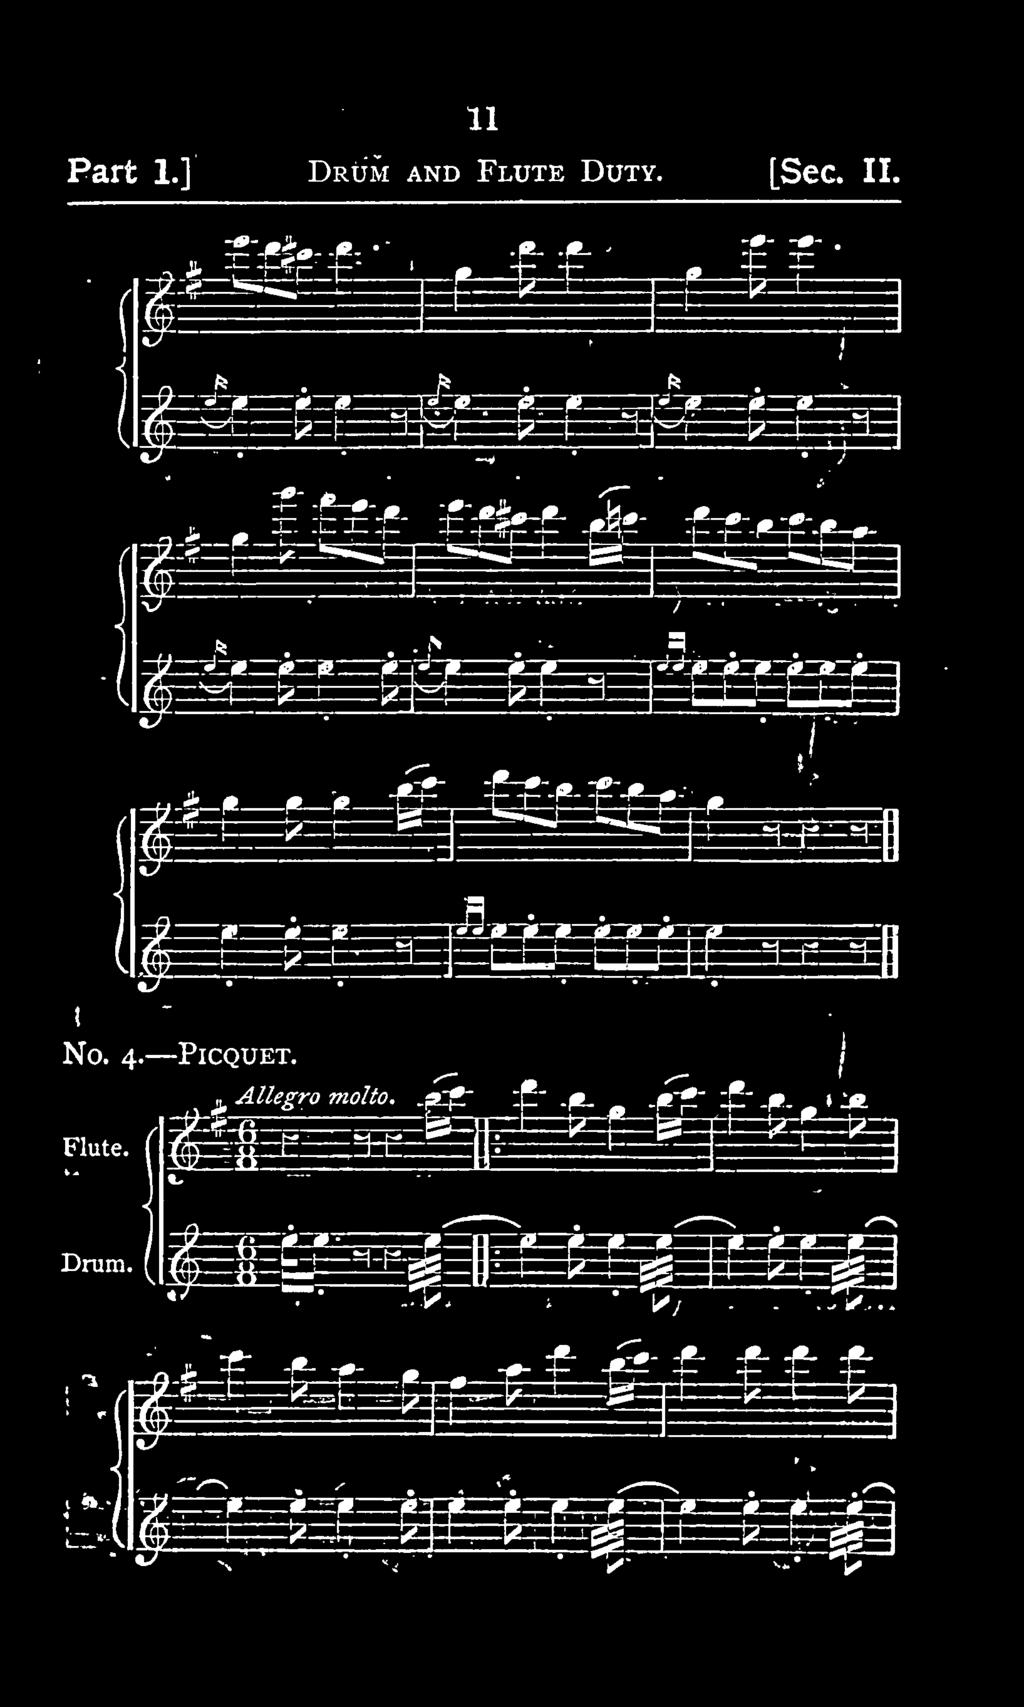 4. PlCQUET Flute. tl Allegro molto..^fr : -.jb_ ^.